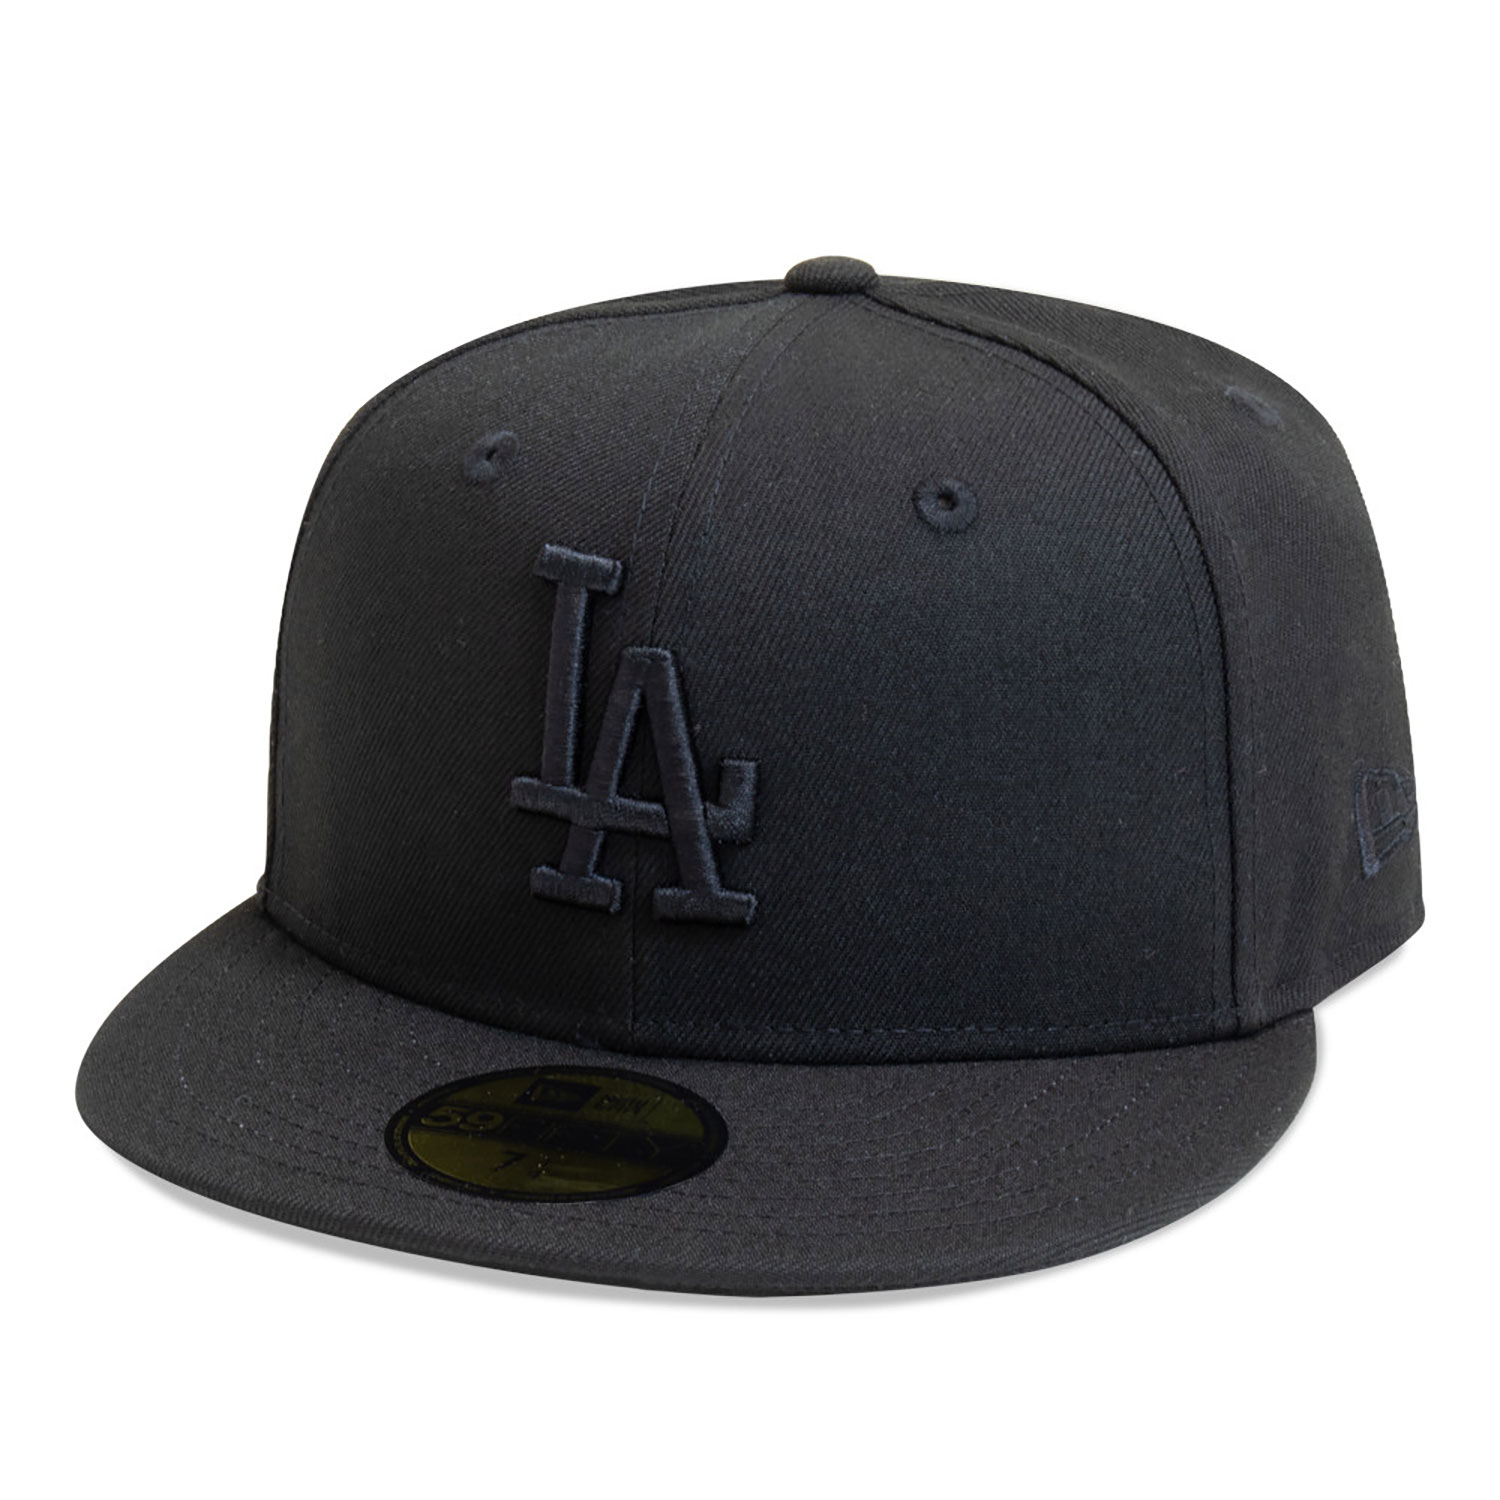 Gorra plana gris ajustada 59FIFTY Essential de Los Angeles Dodgers